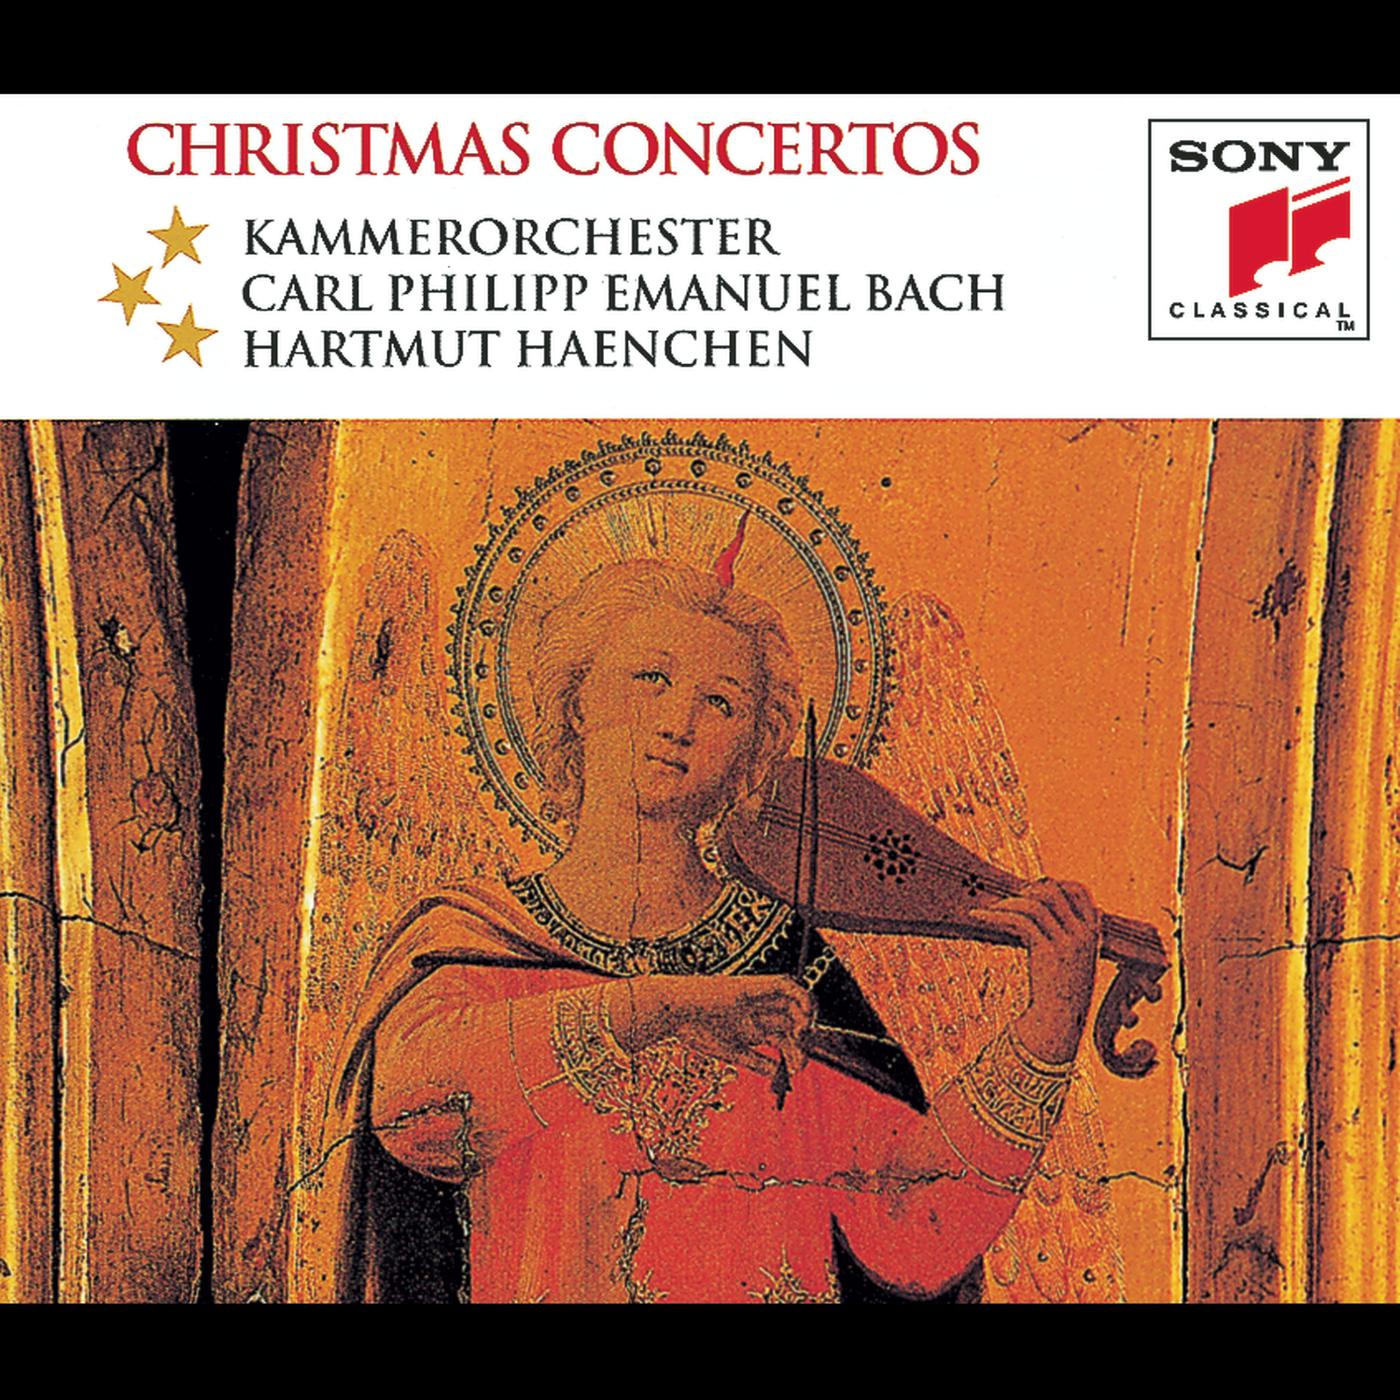 Concerto Grosso in G Minor, Op. 6, No. 8 "Christmas Concerto":III. Adagio - Allegro - Adagio